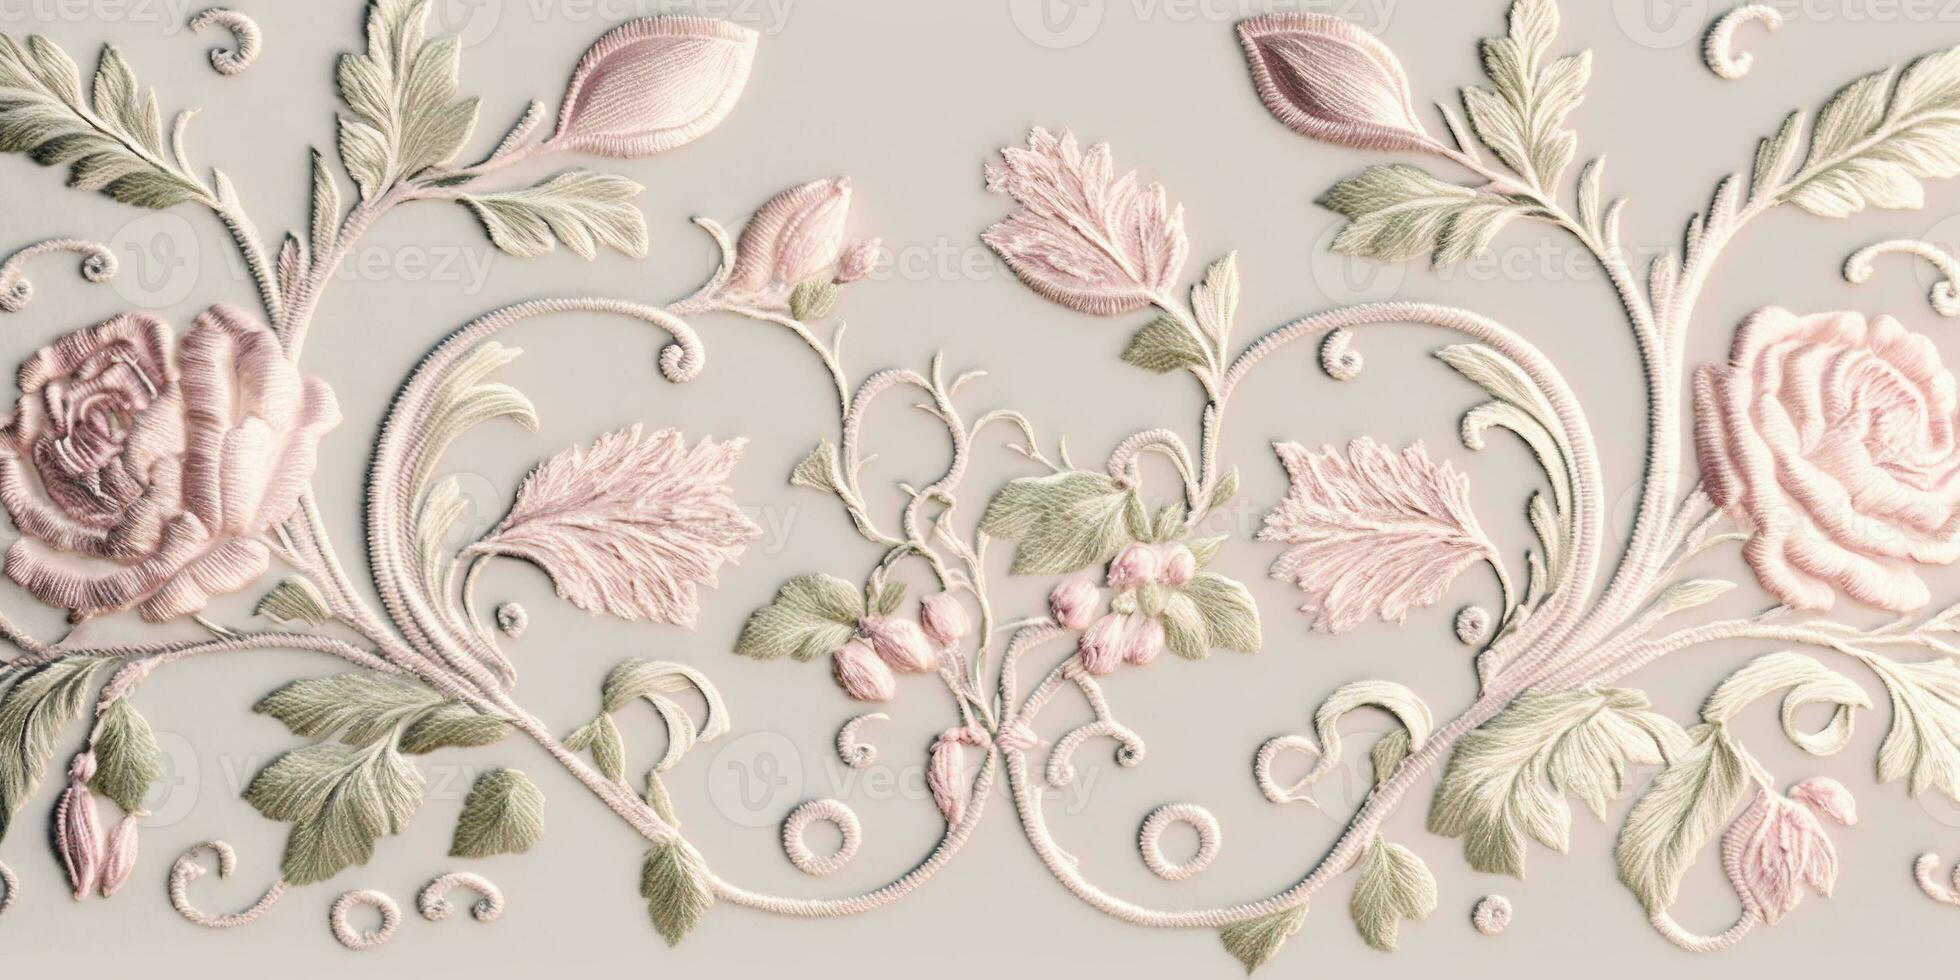 generativo ai, bordado desgastado elegante barroco ligero rosado rosas modelo. floral impresión en seda antecedentes foto